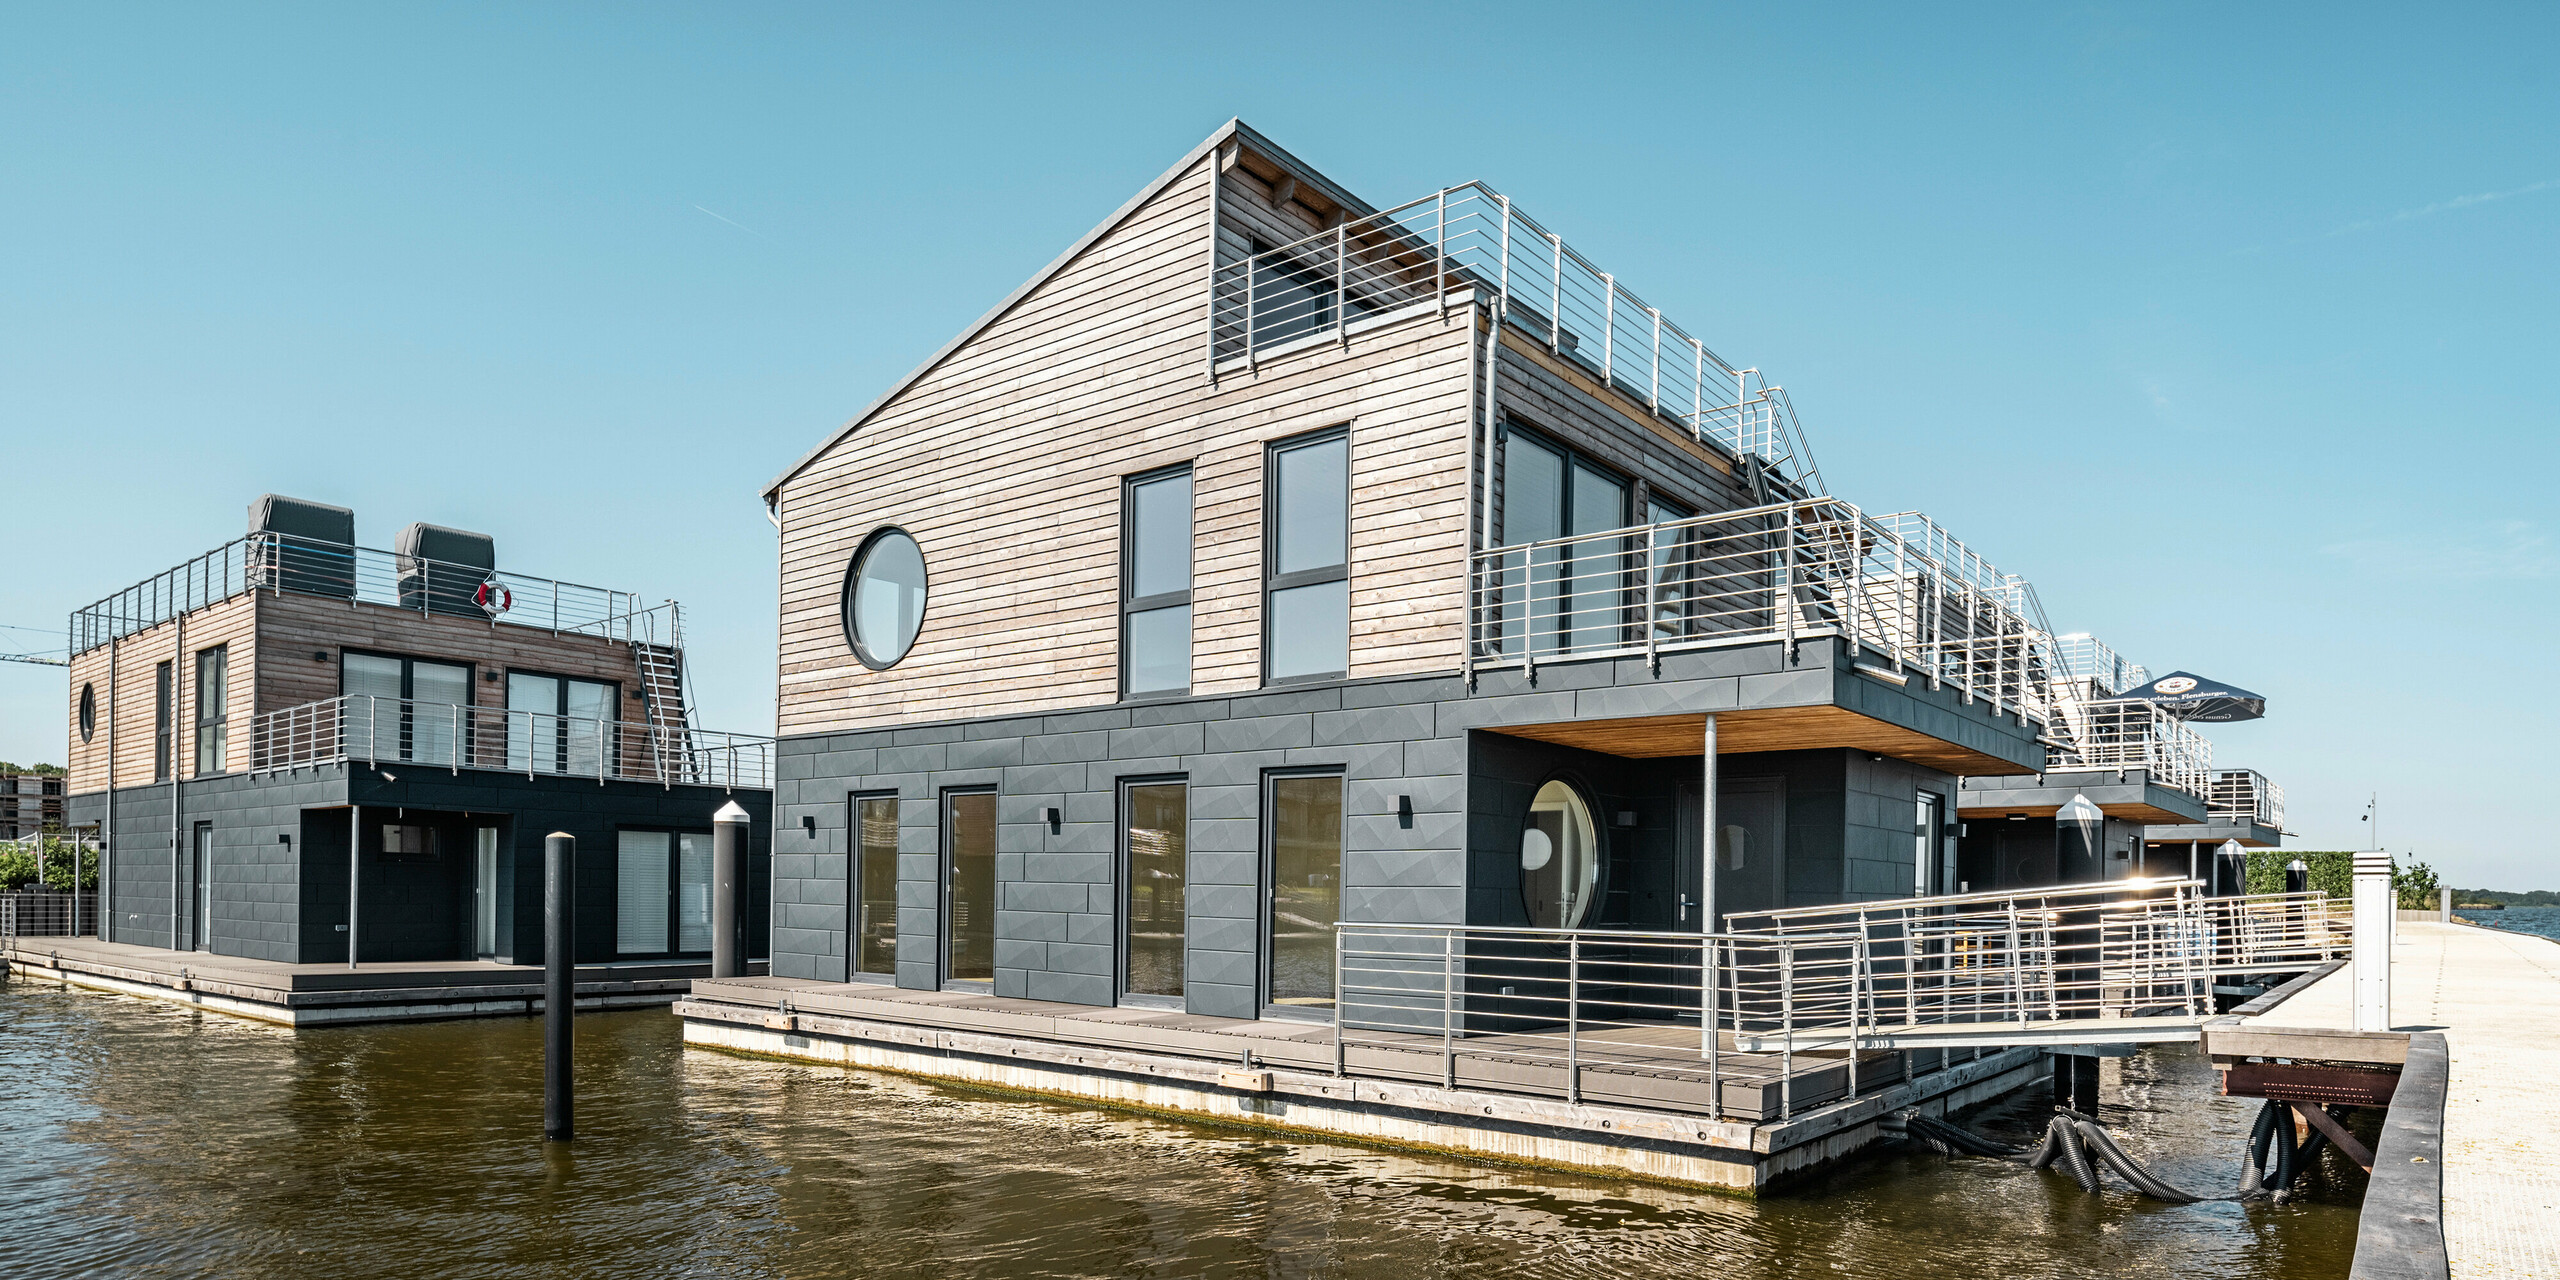 PREFA Siding.X Aluminiumfassade umhüllt elf Wasserhäuser im Pionierhafen Schleswig